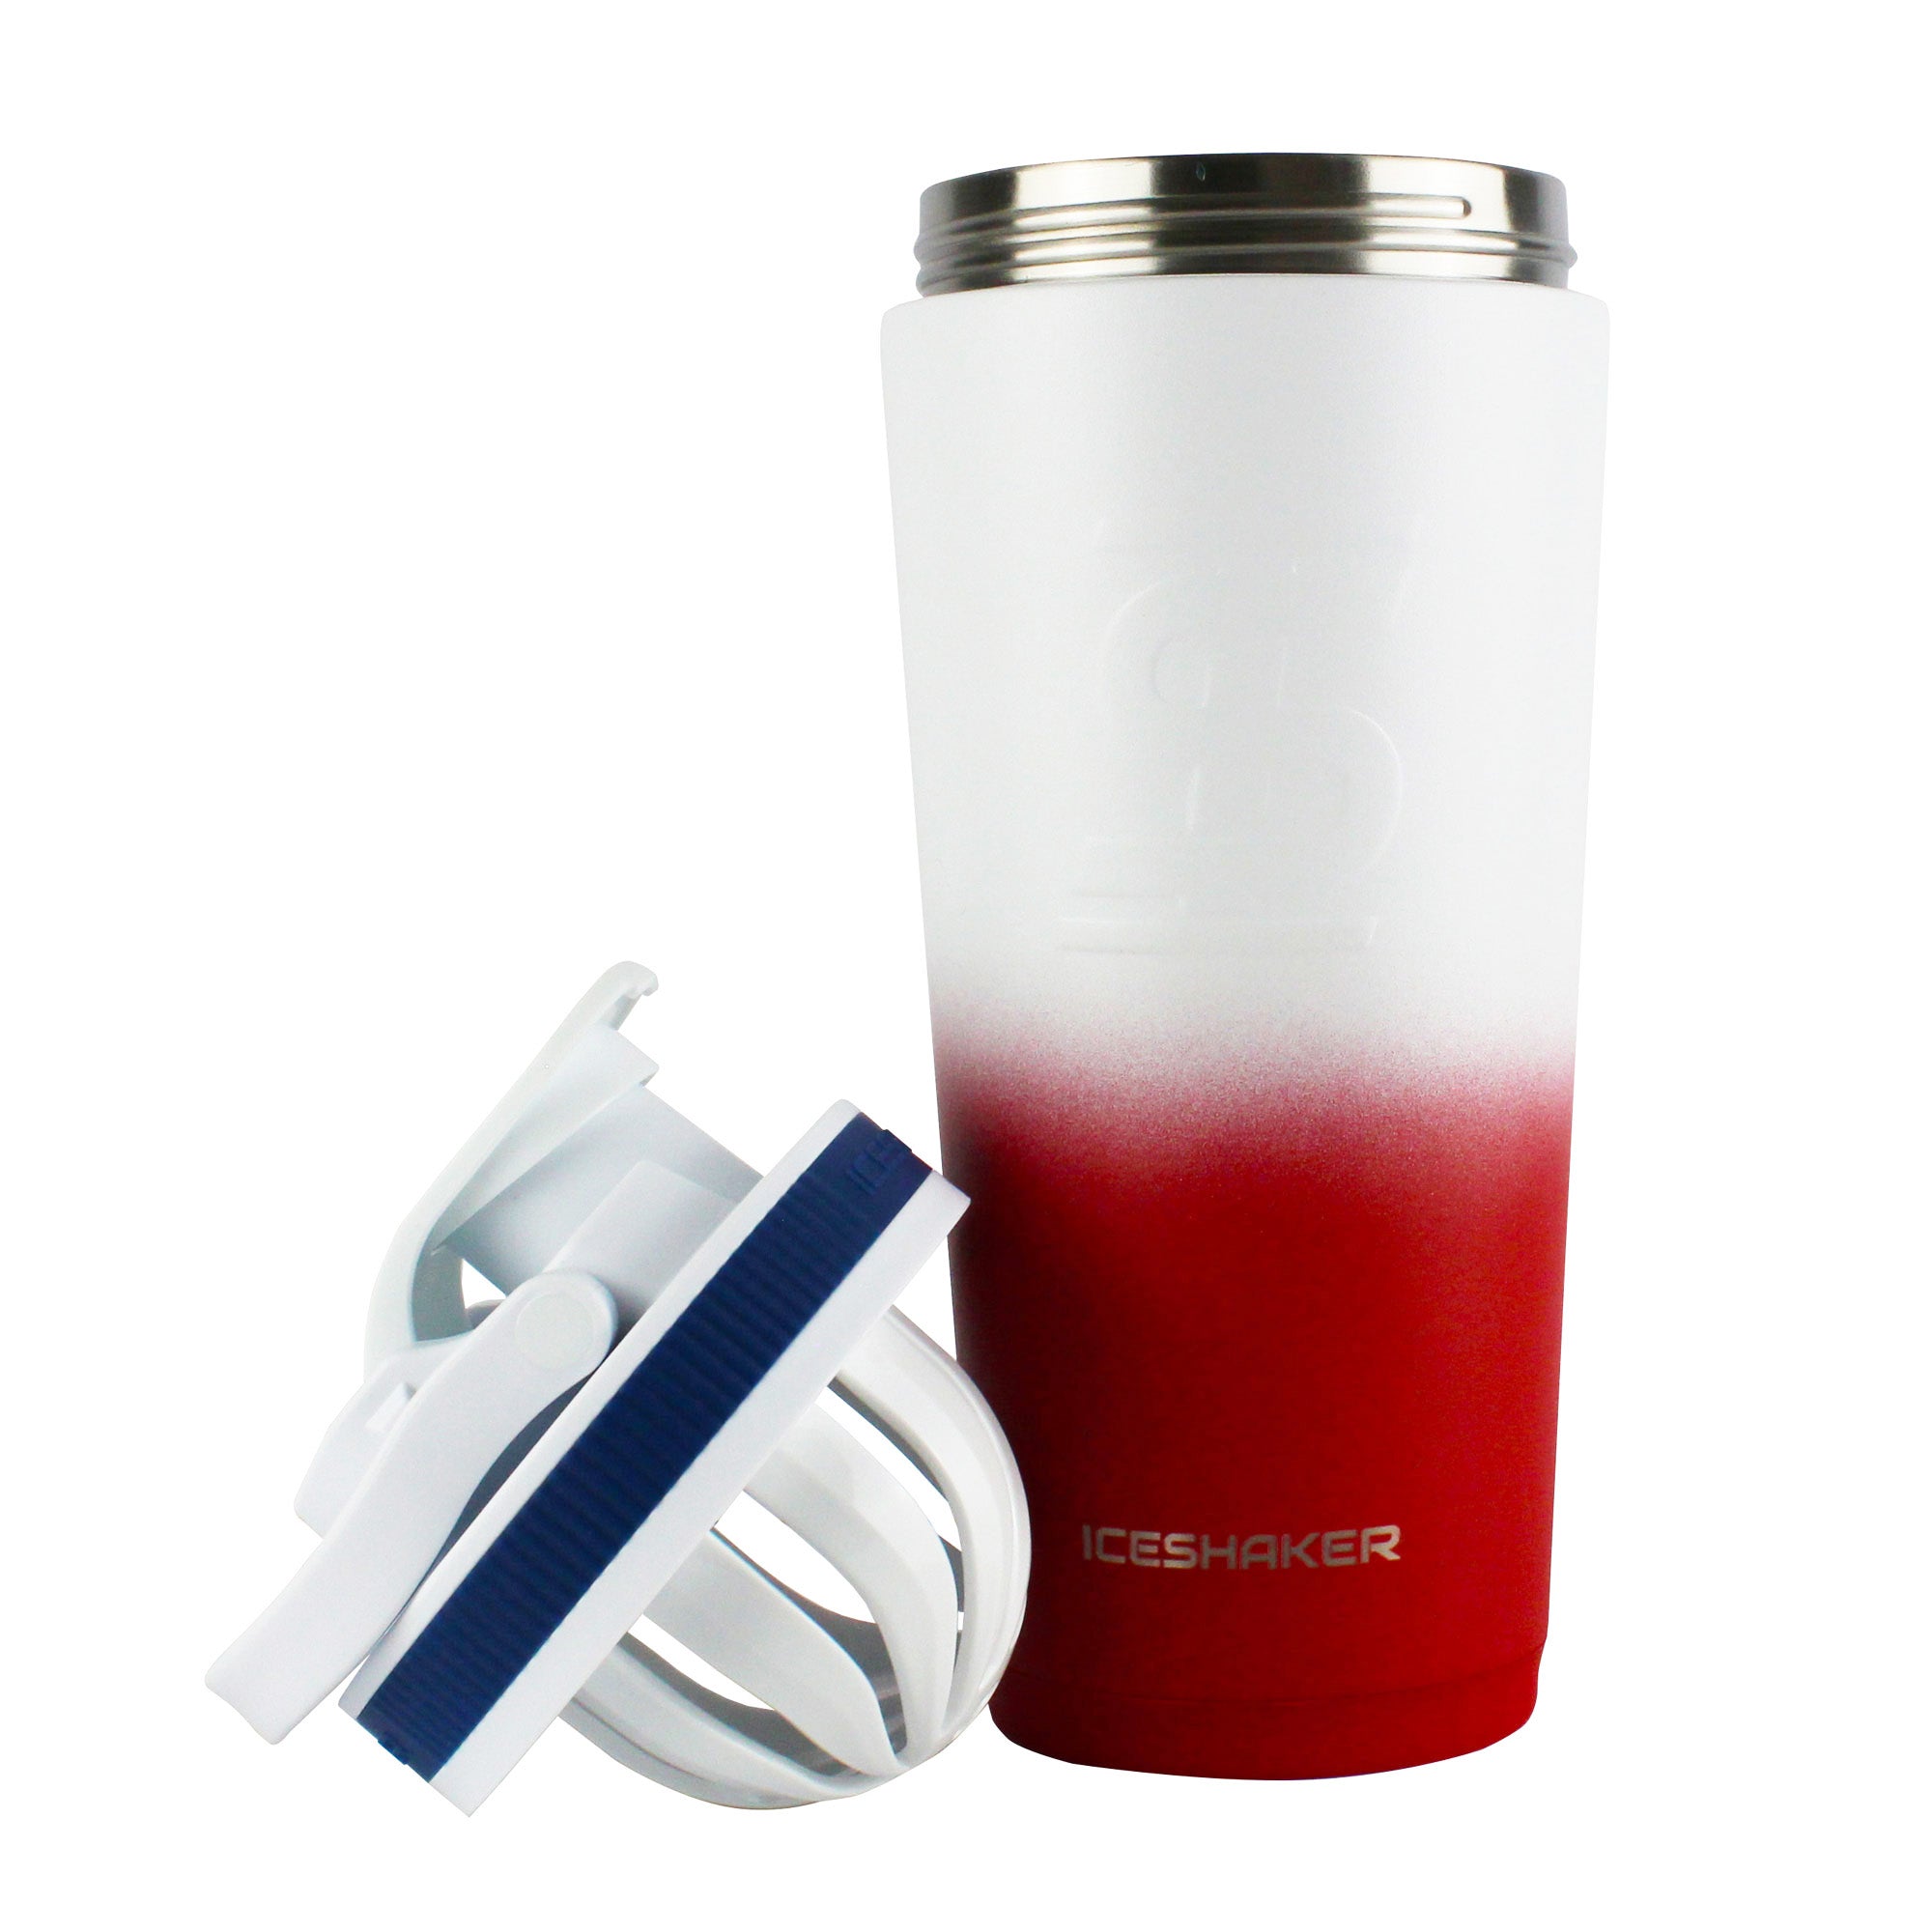 Ice Shaker - Premium Insulated Drinkware